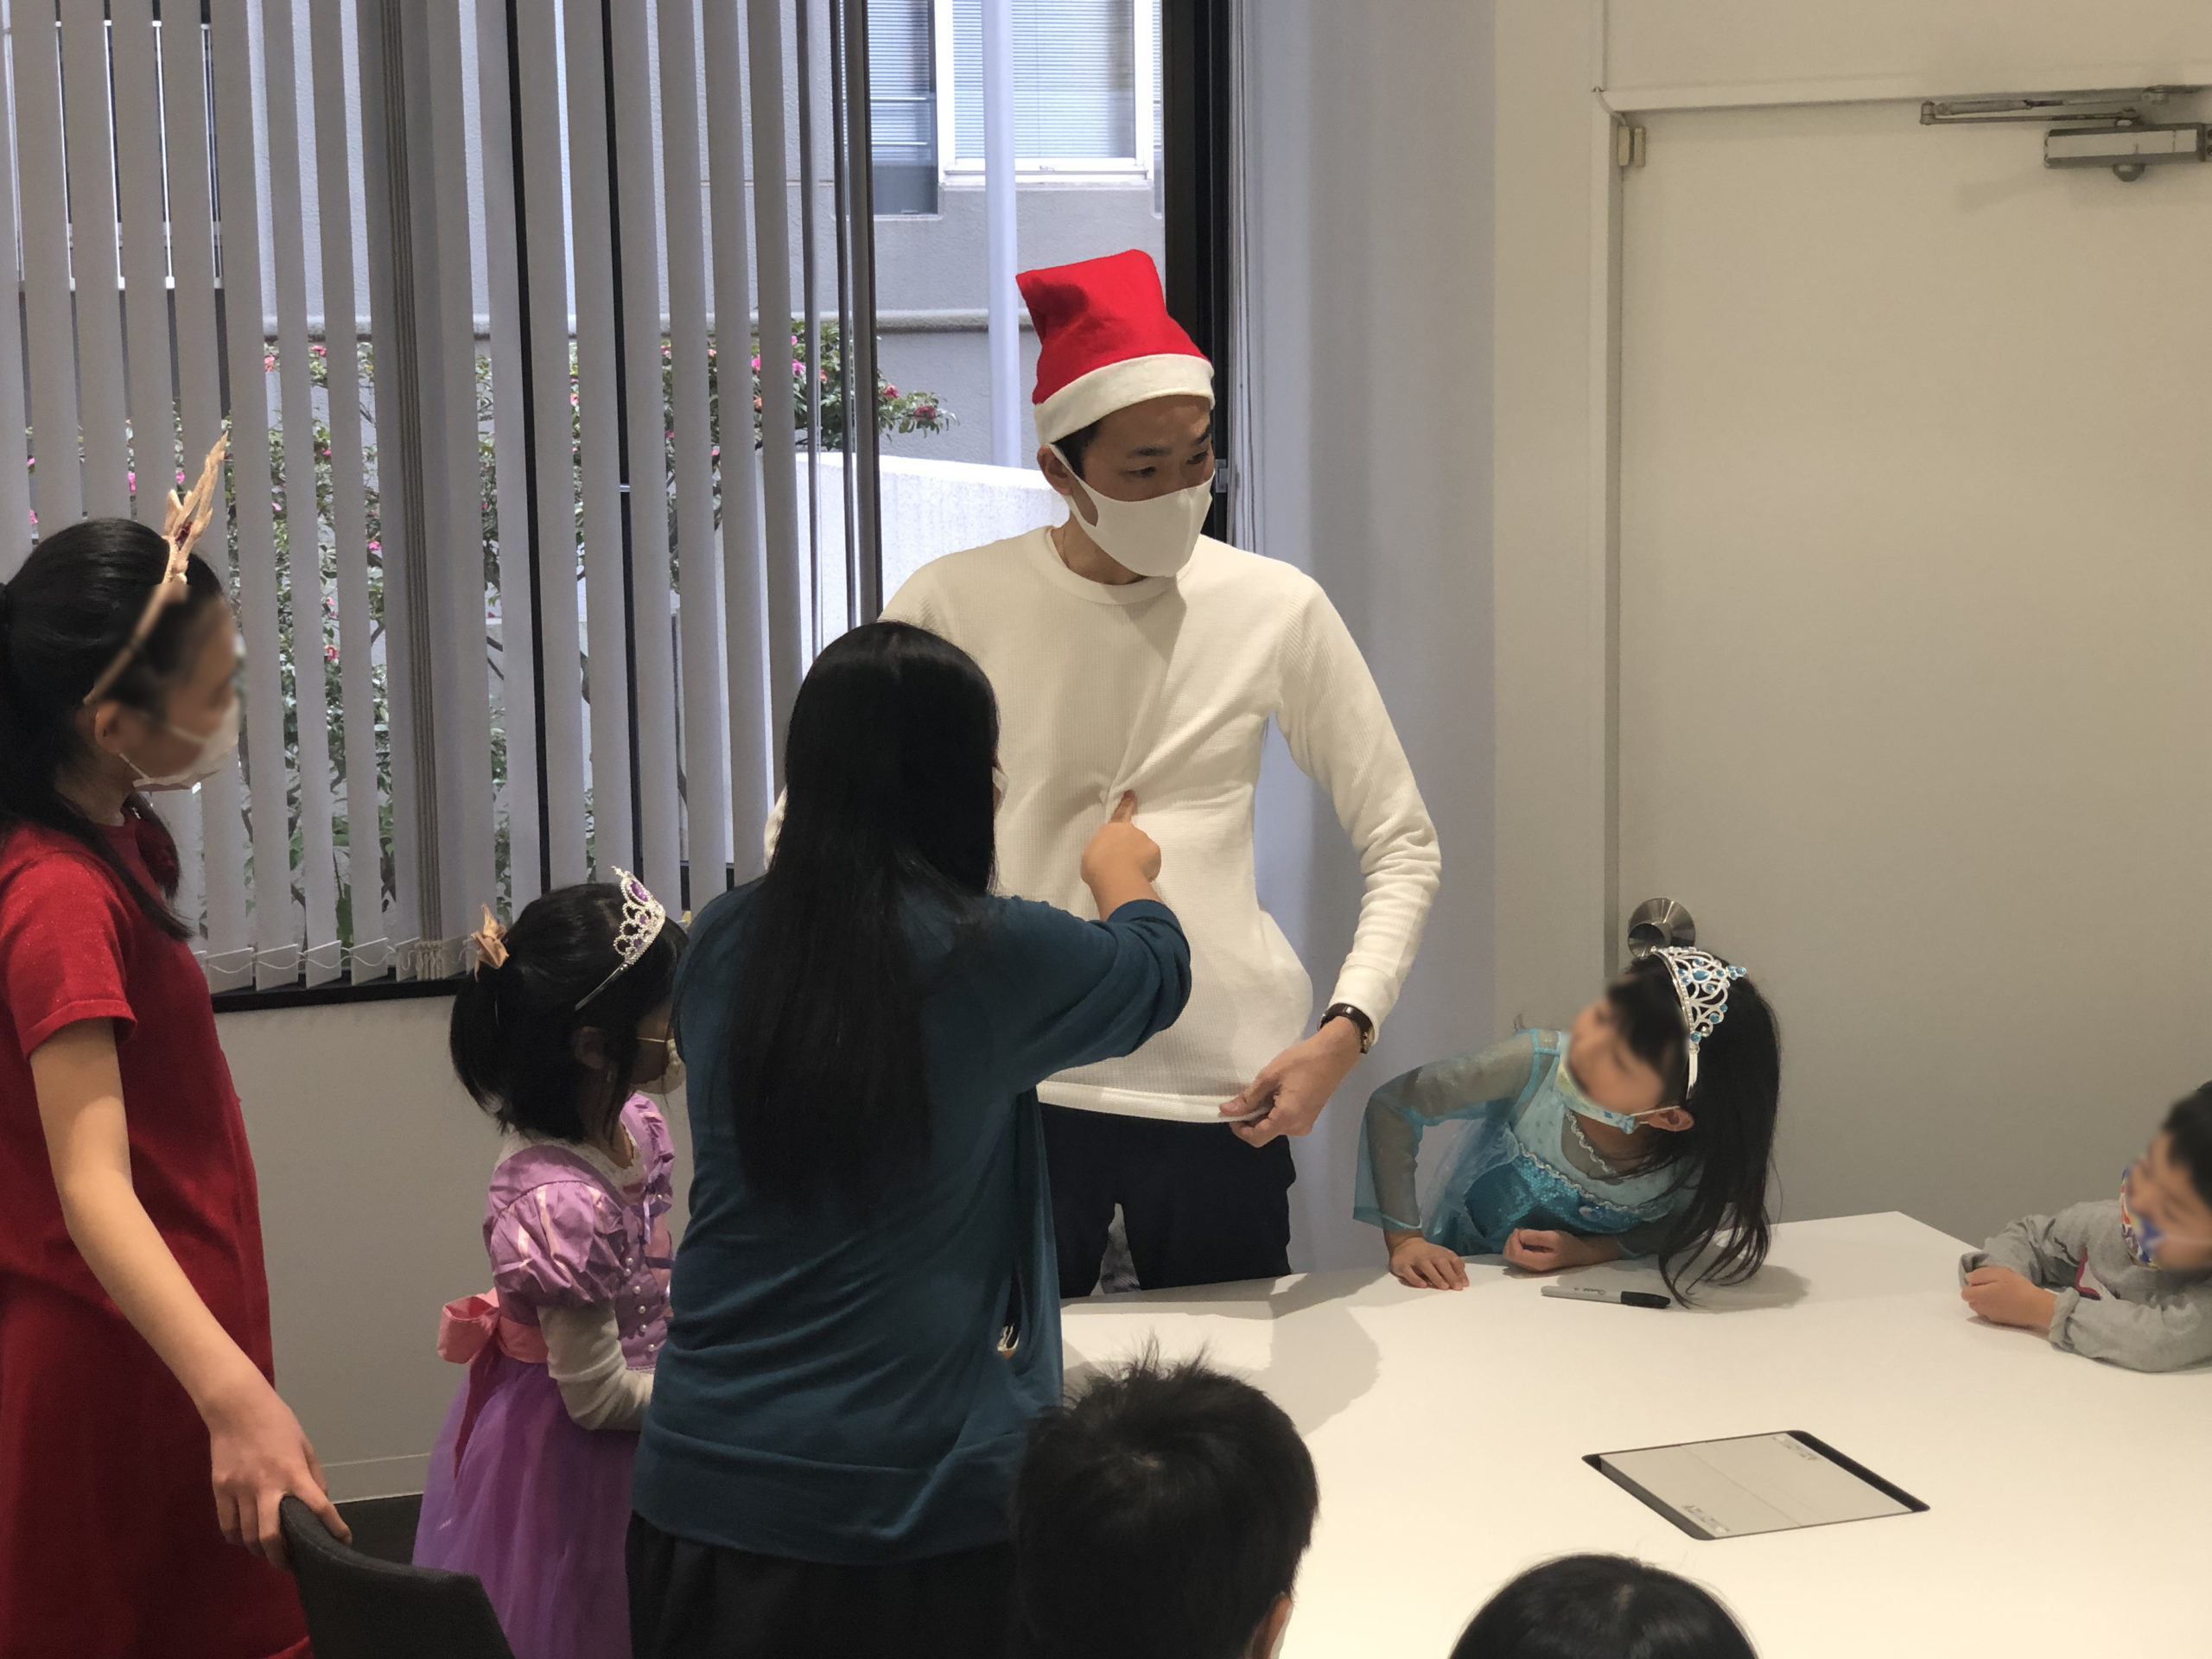 マジシャンを触る子 子供向け 企業のファミリークリスマスパーティーでマジシャンのマジックショー 東京都千代田区